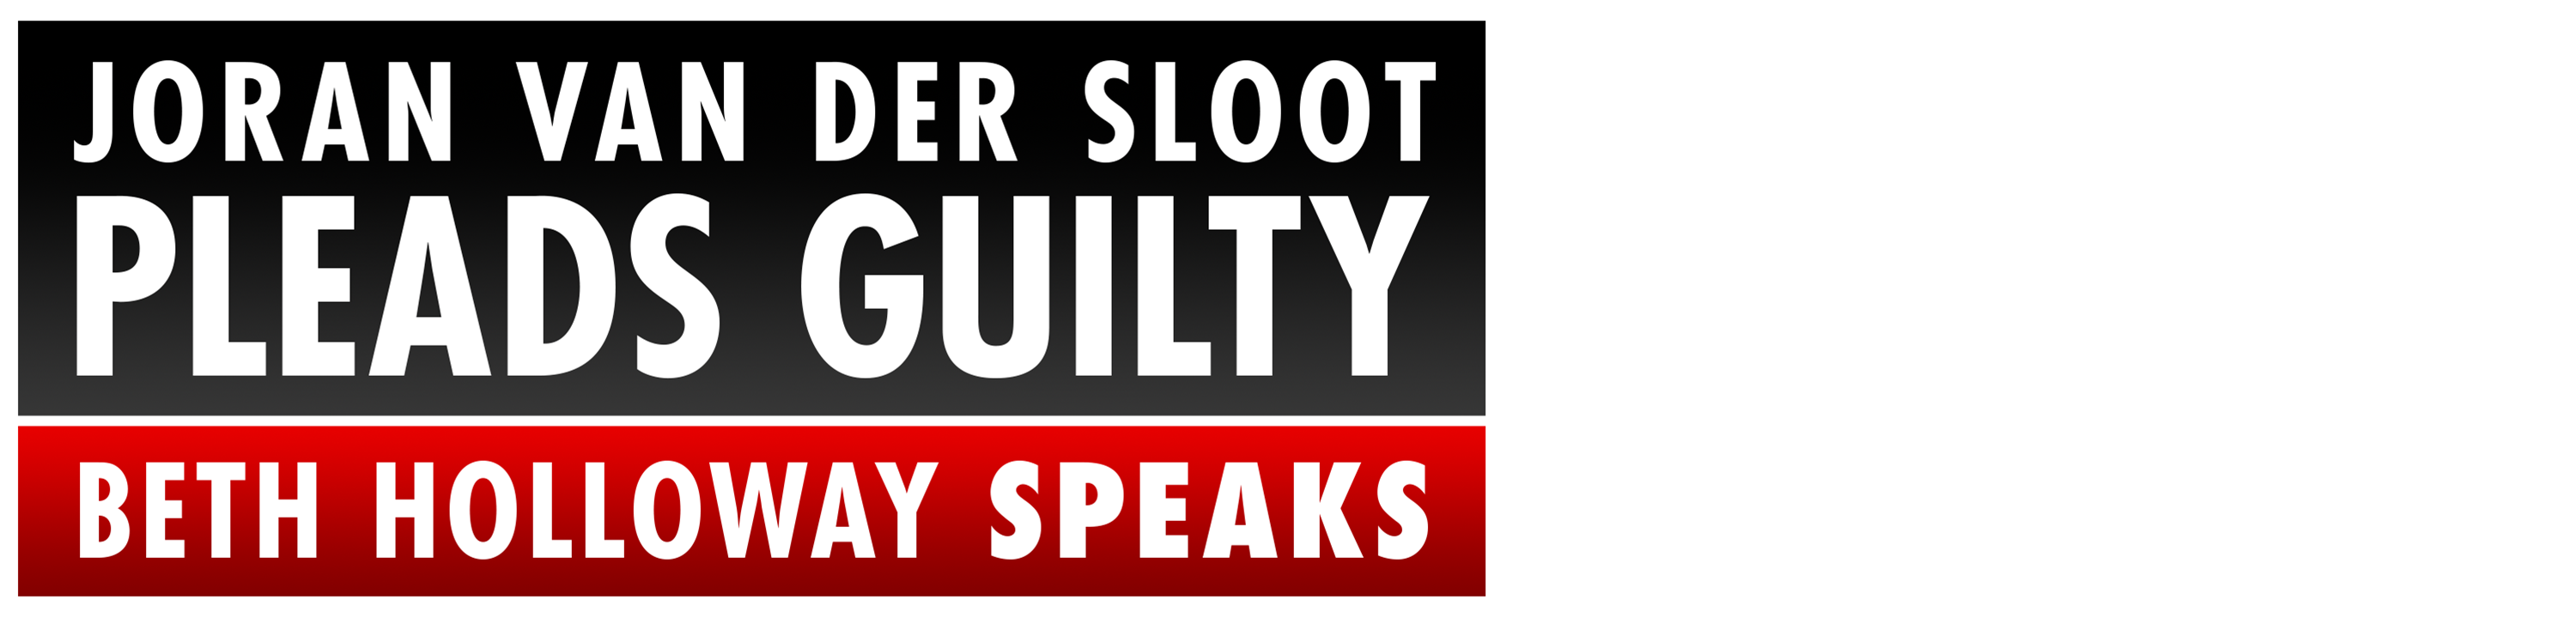 Van der Sloot Pleads Guilty: Beth Holloway Speaks logo